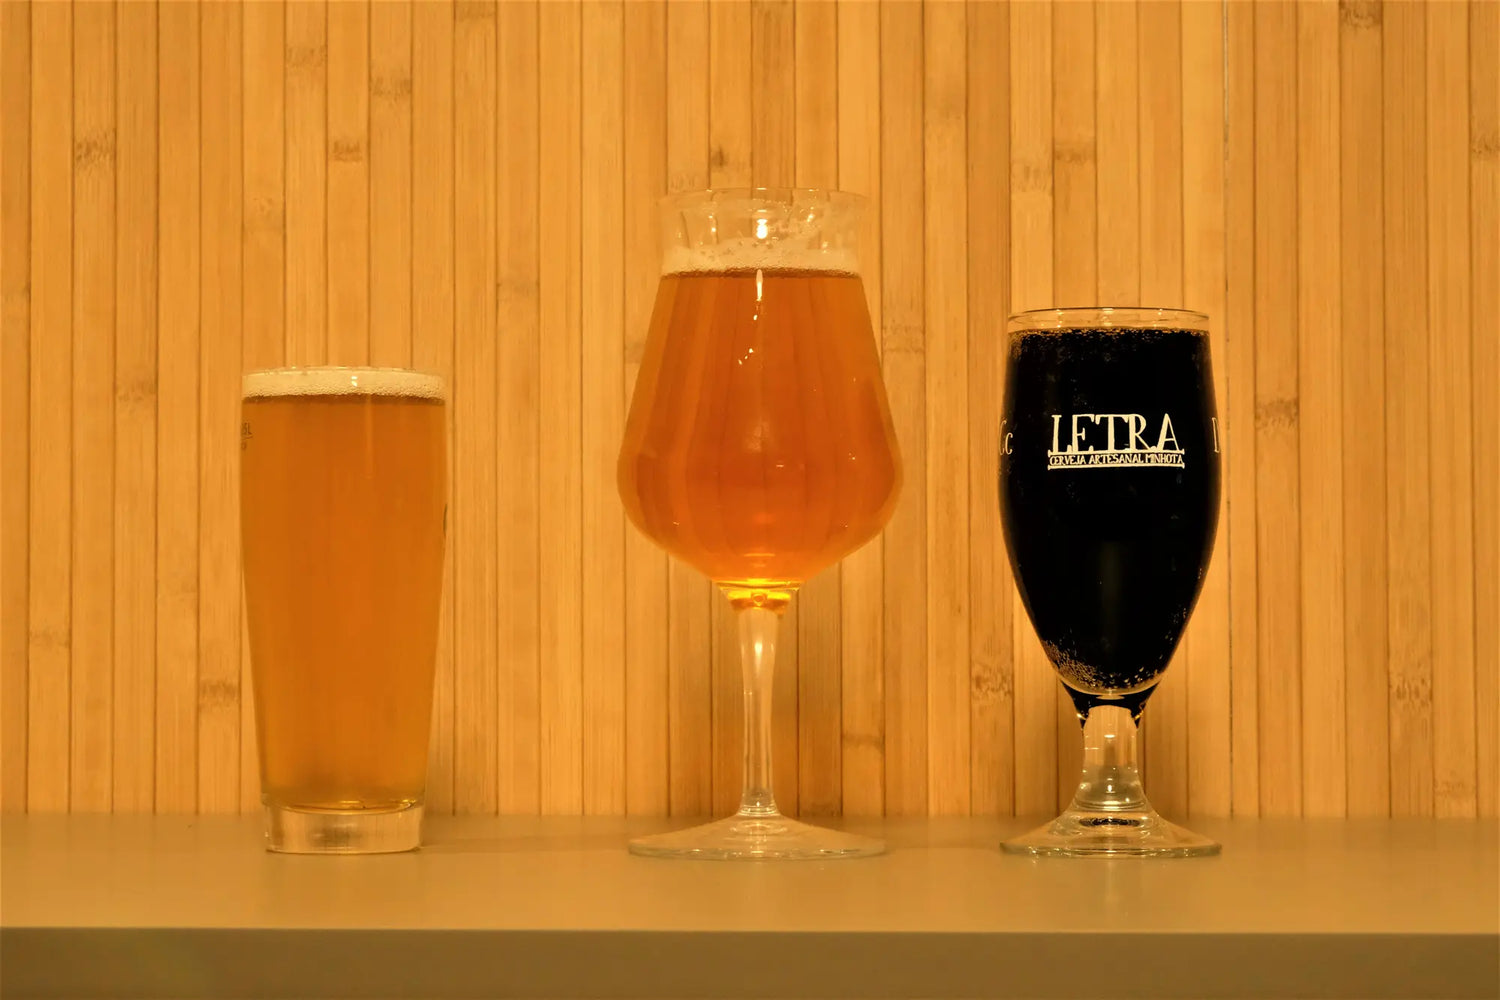 Três copos de cheios com cerveja artesanal, um copo de cerveja pilsner à esquerda e mais pequeno que os outros, o do meio em copo tulipa com cerveja dourada nele e terceiro copo à direita com uma stout e com inscrição da marca letra no vidro. Fundo com ripado de madeira